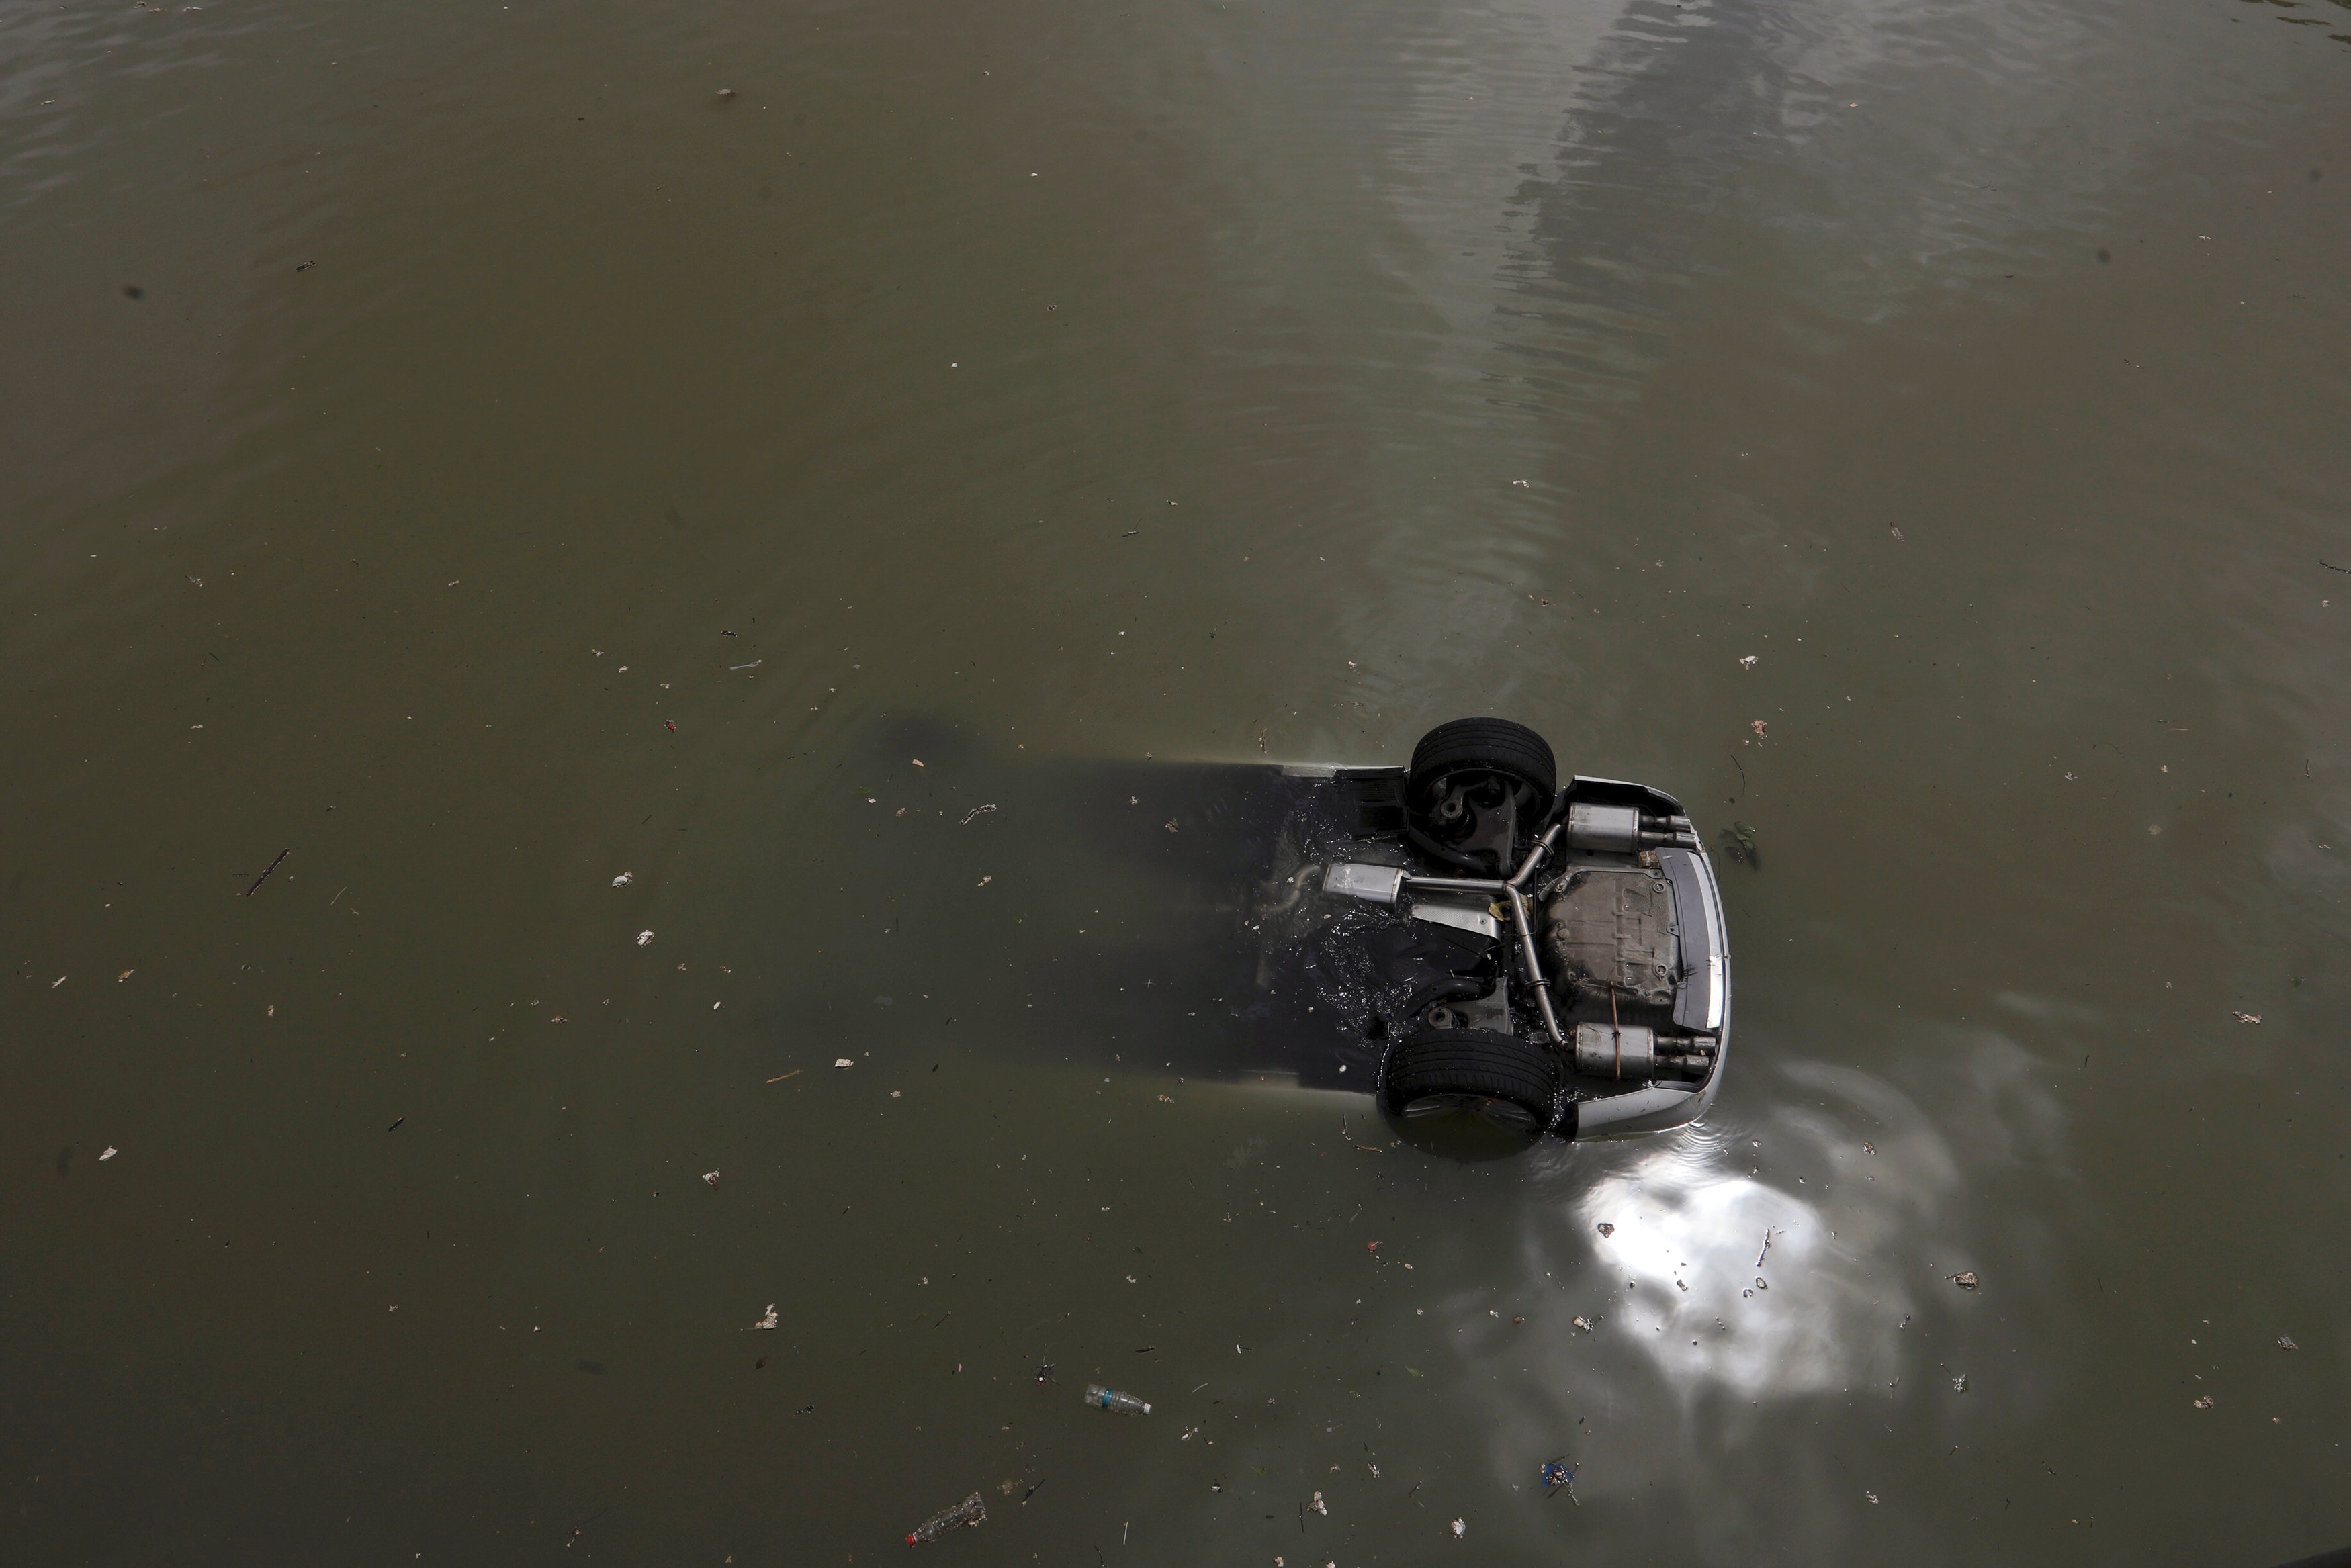 سيارة تسقط فى المياه الغزيرة بالصين